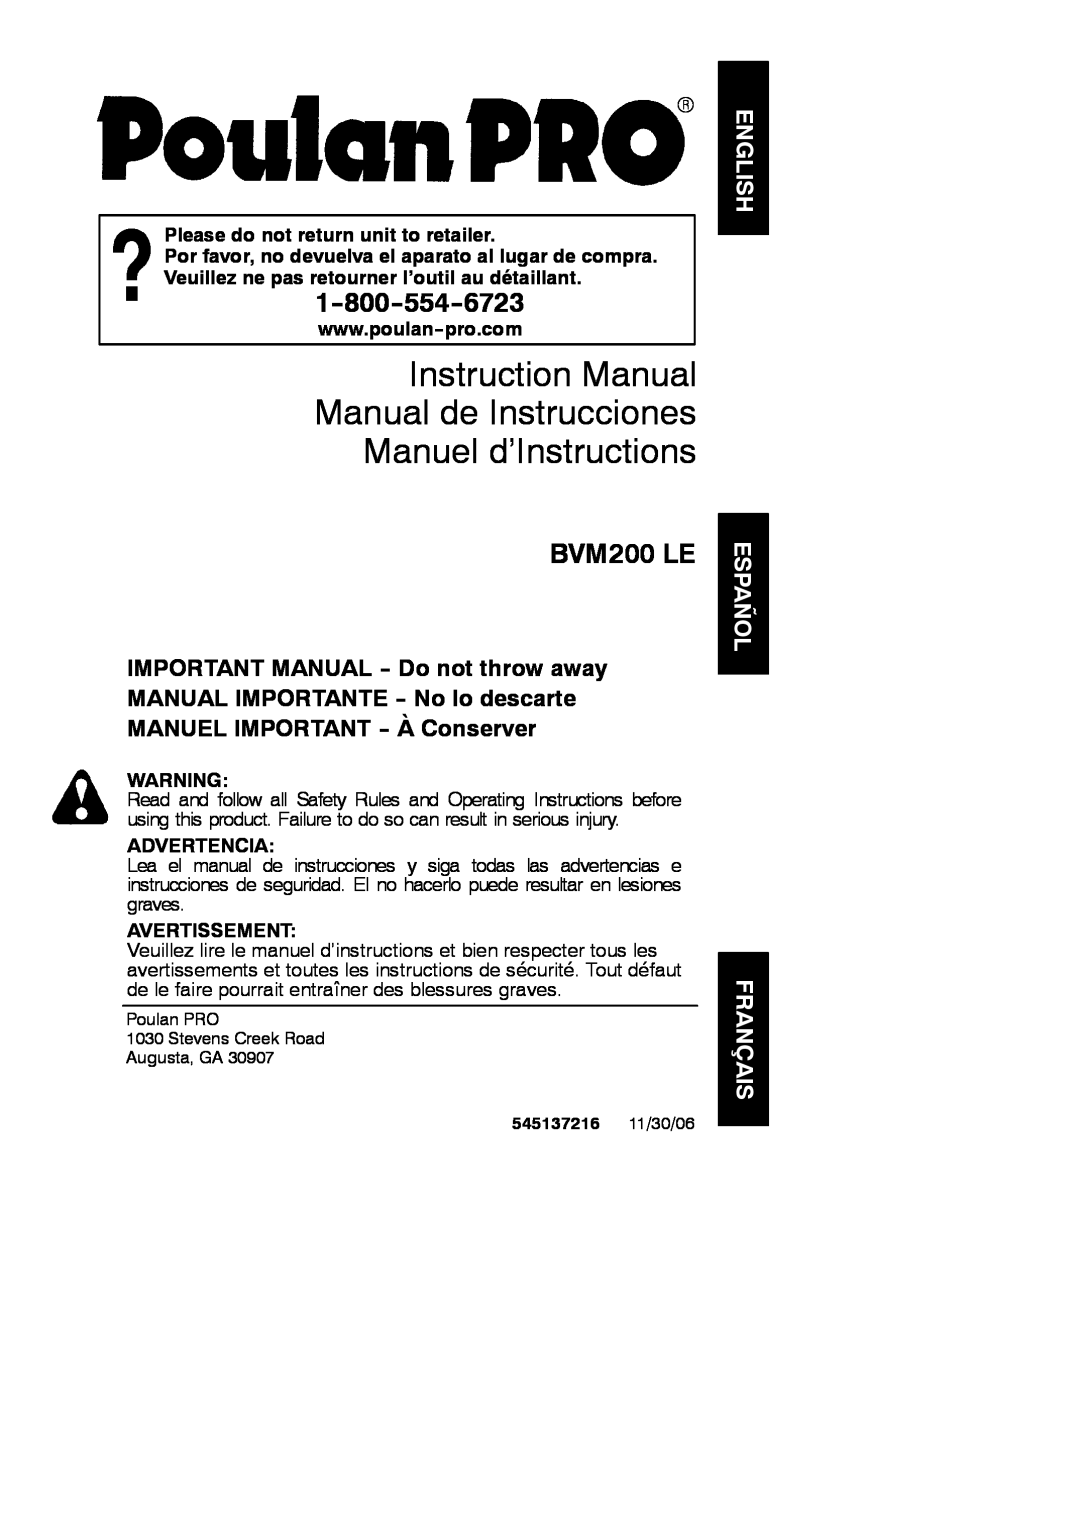 Poulan 545137216 instruction manual Manuel d’Instructions, BVM200 LE, English Español Français, Advertencia, Avertissement 